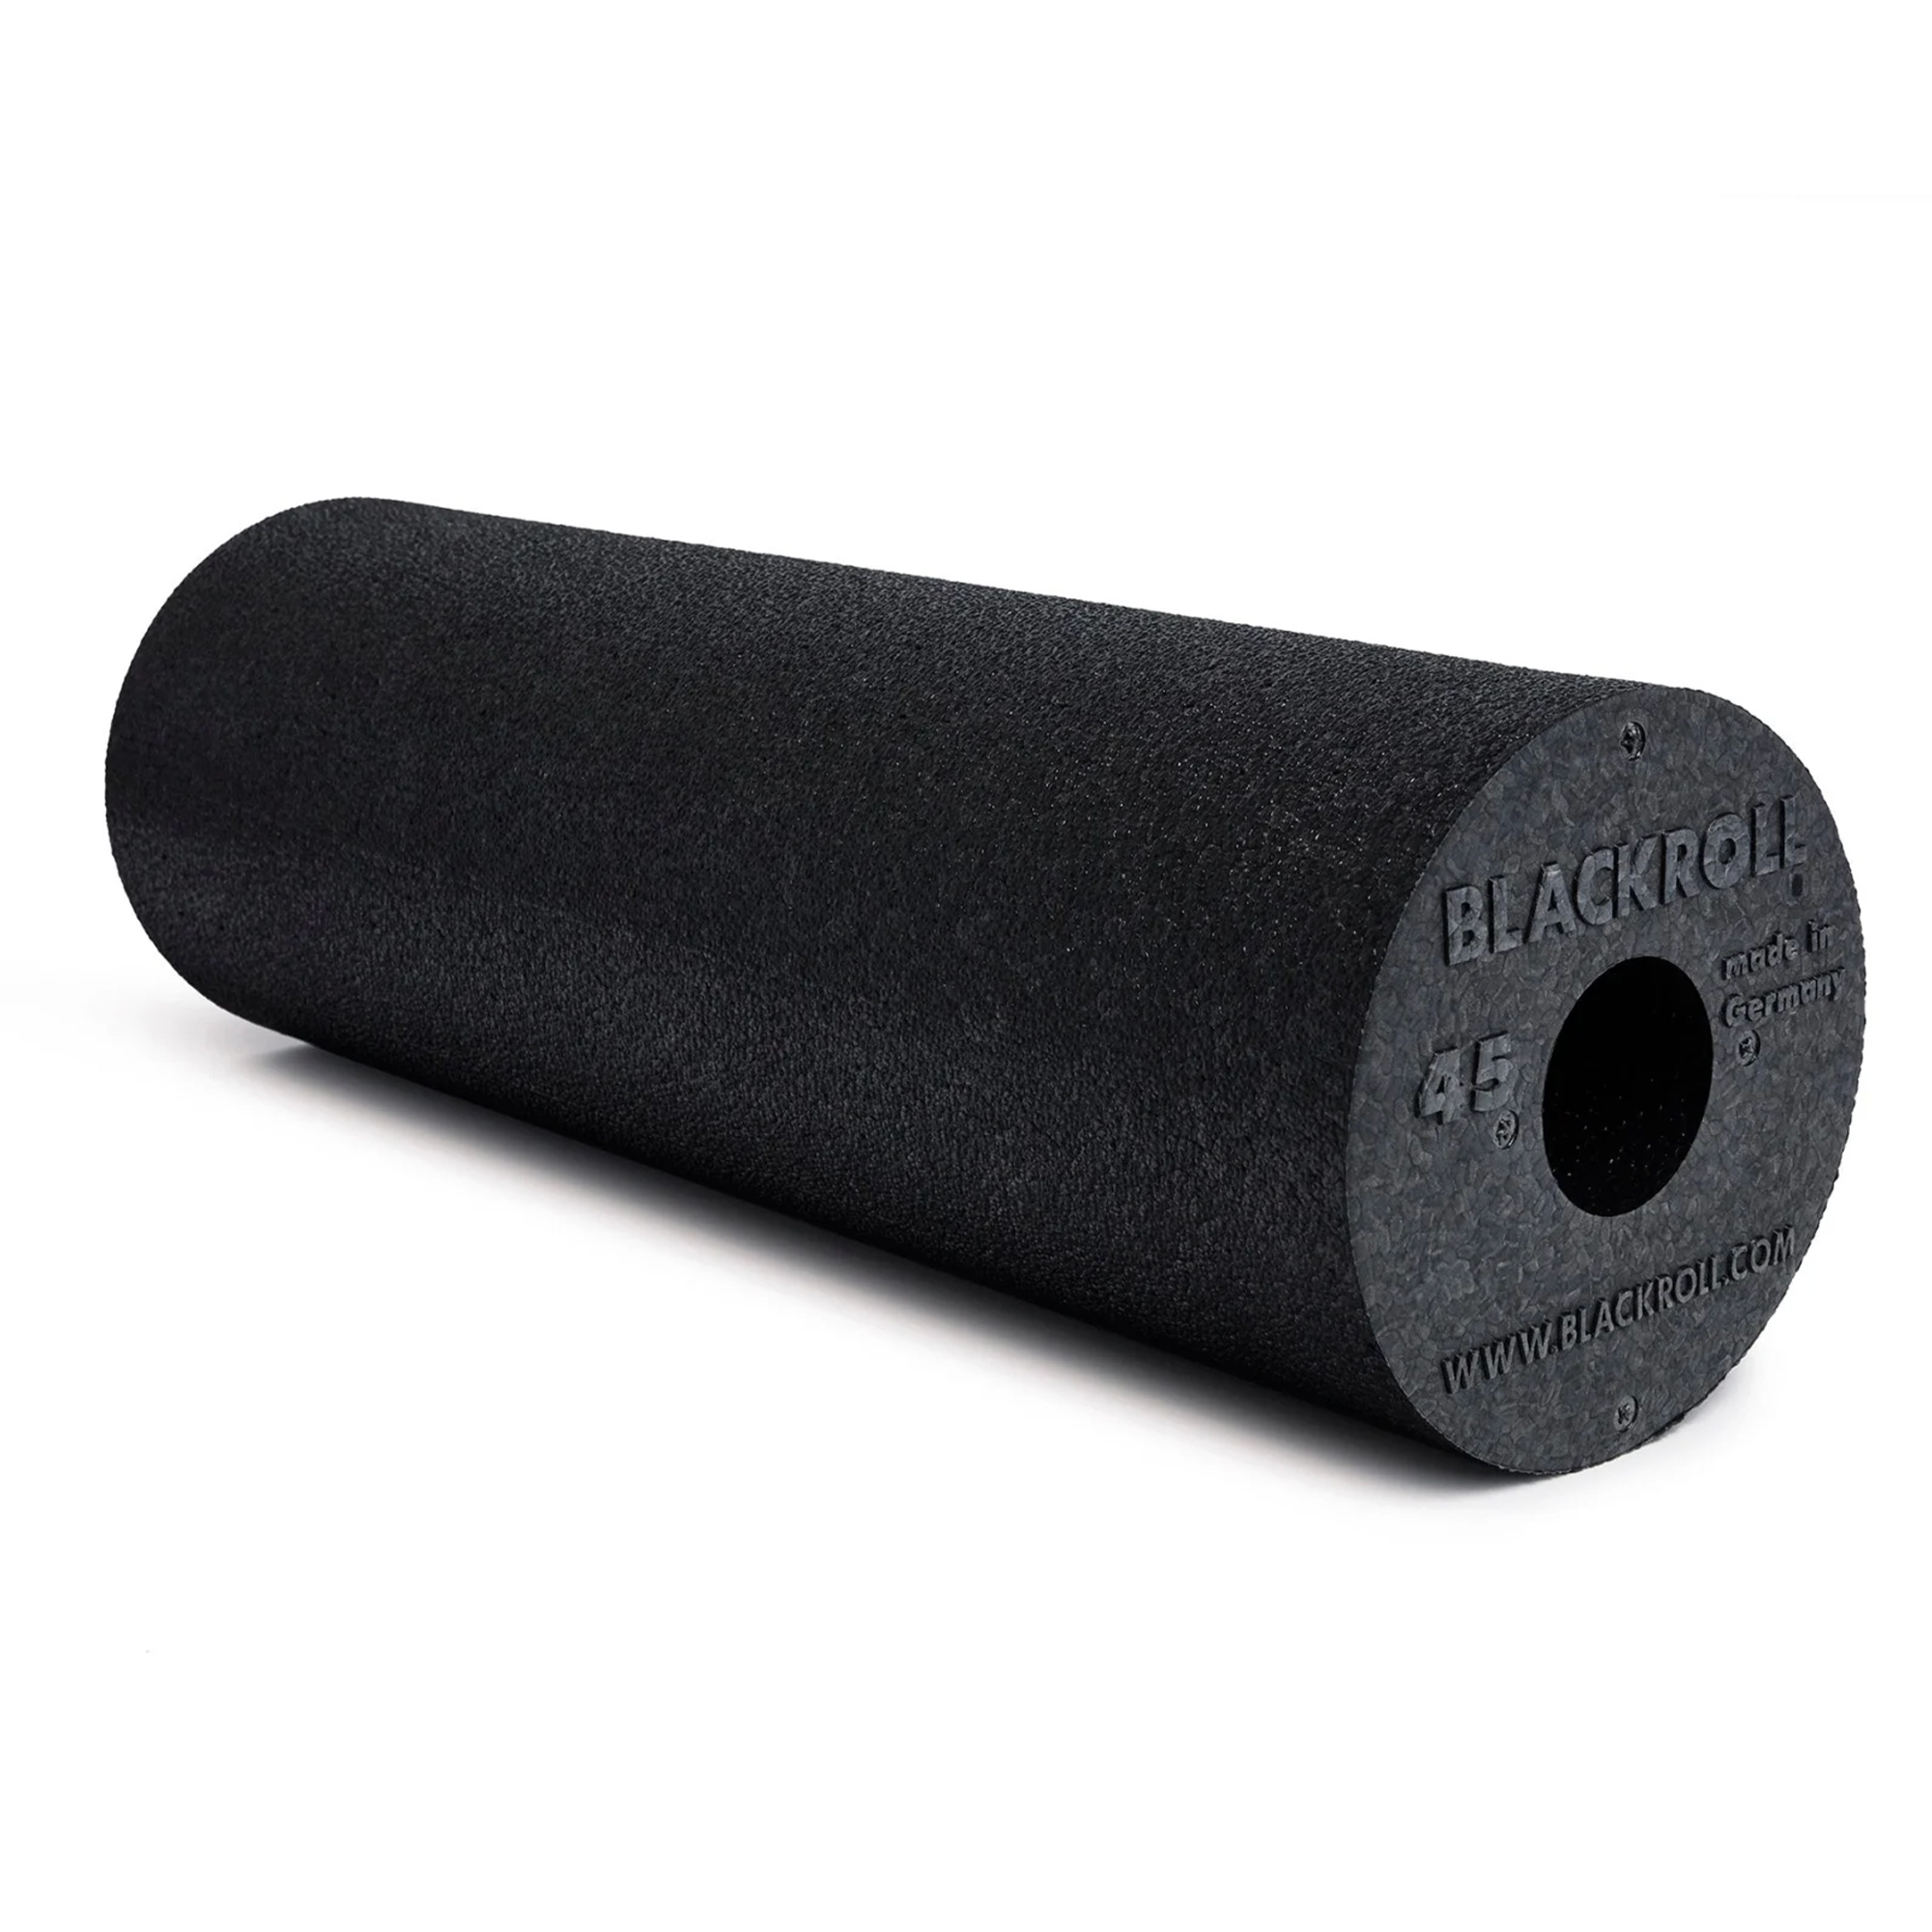 Brug Blackroll Standard 45 cm Foam Roller til en forbedret oplevelse